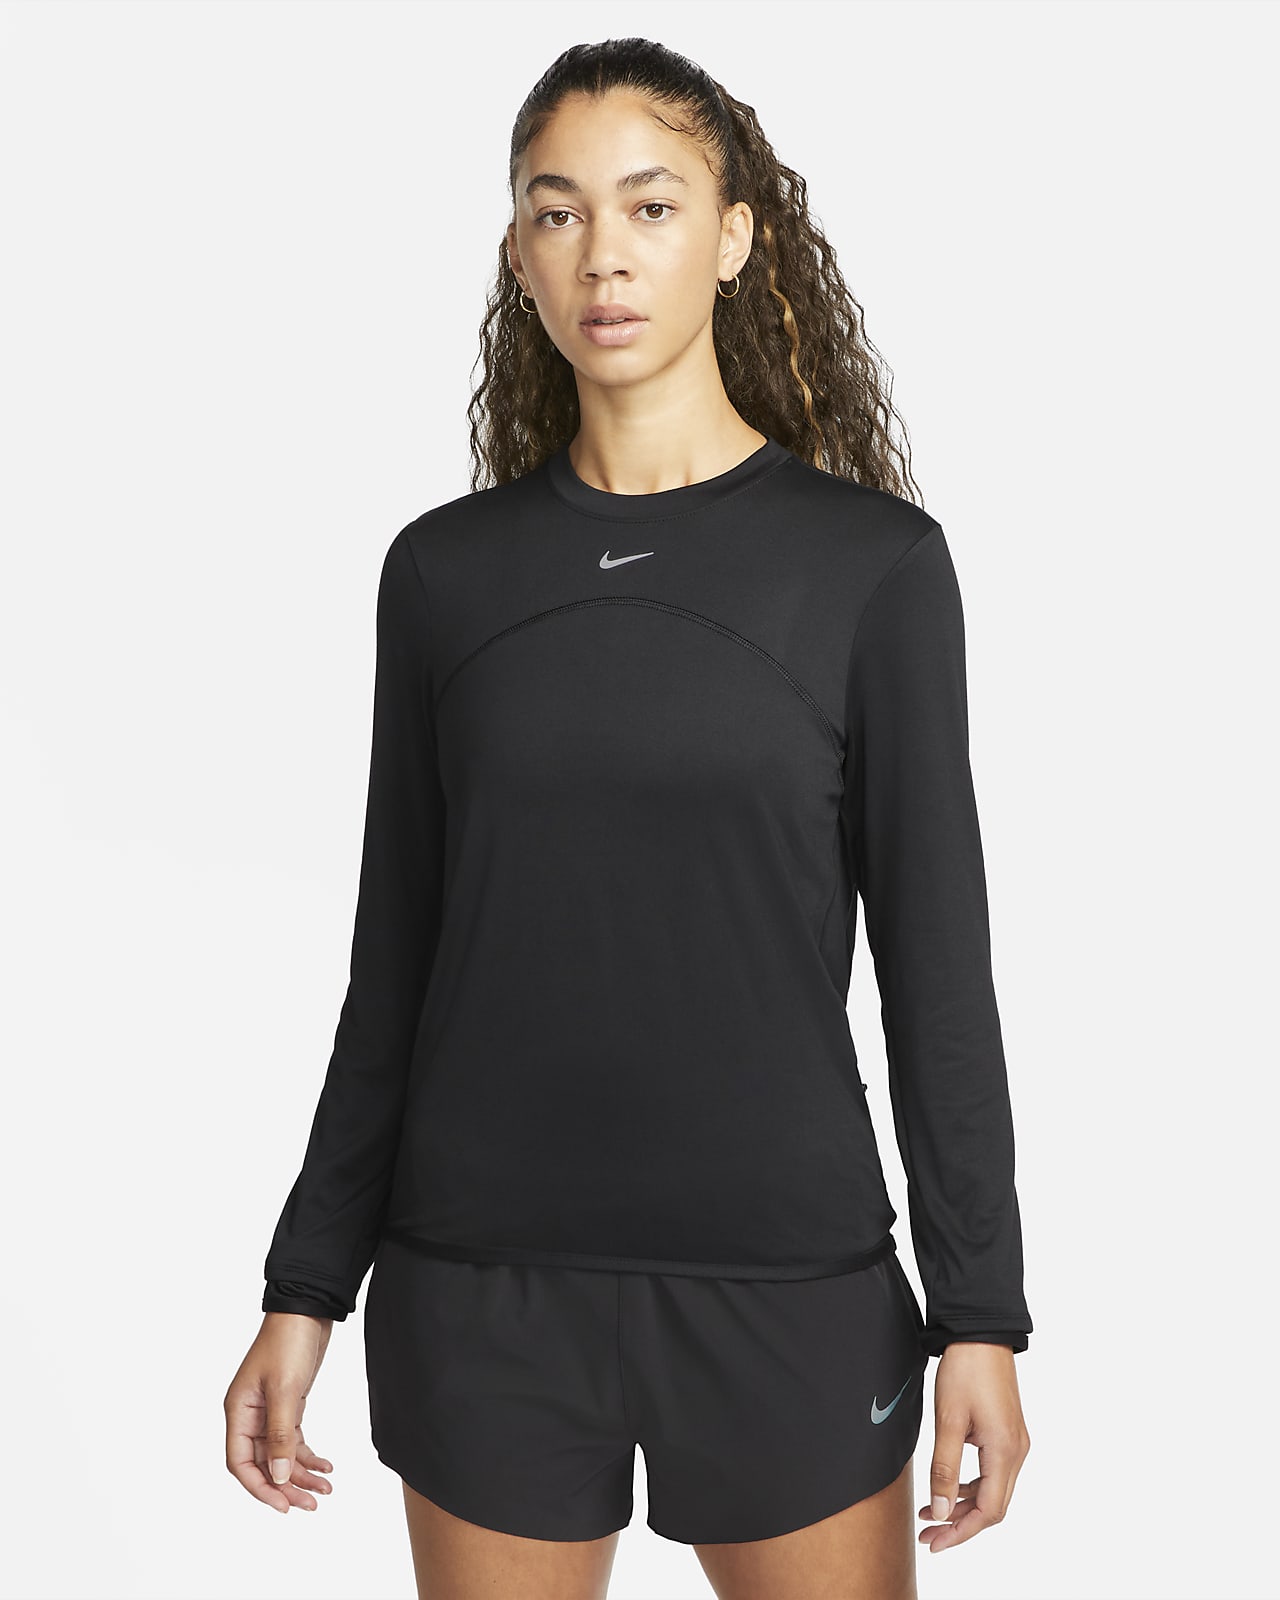 Dámské běžecké tričko s kulatým výstřihem Nike Dri-FIT Swift Element UV